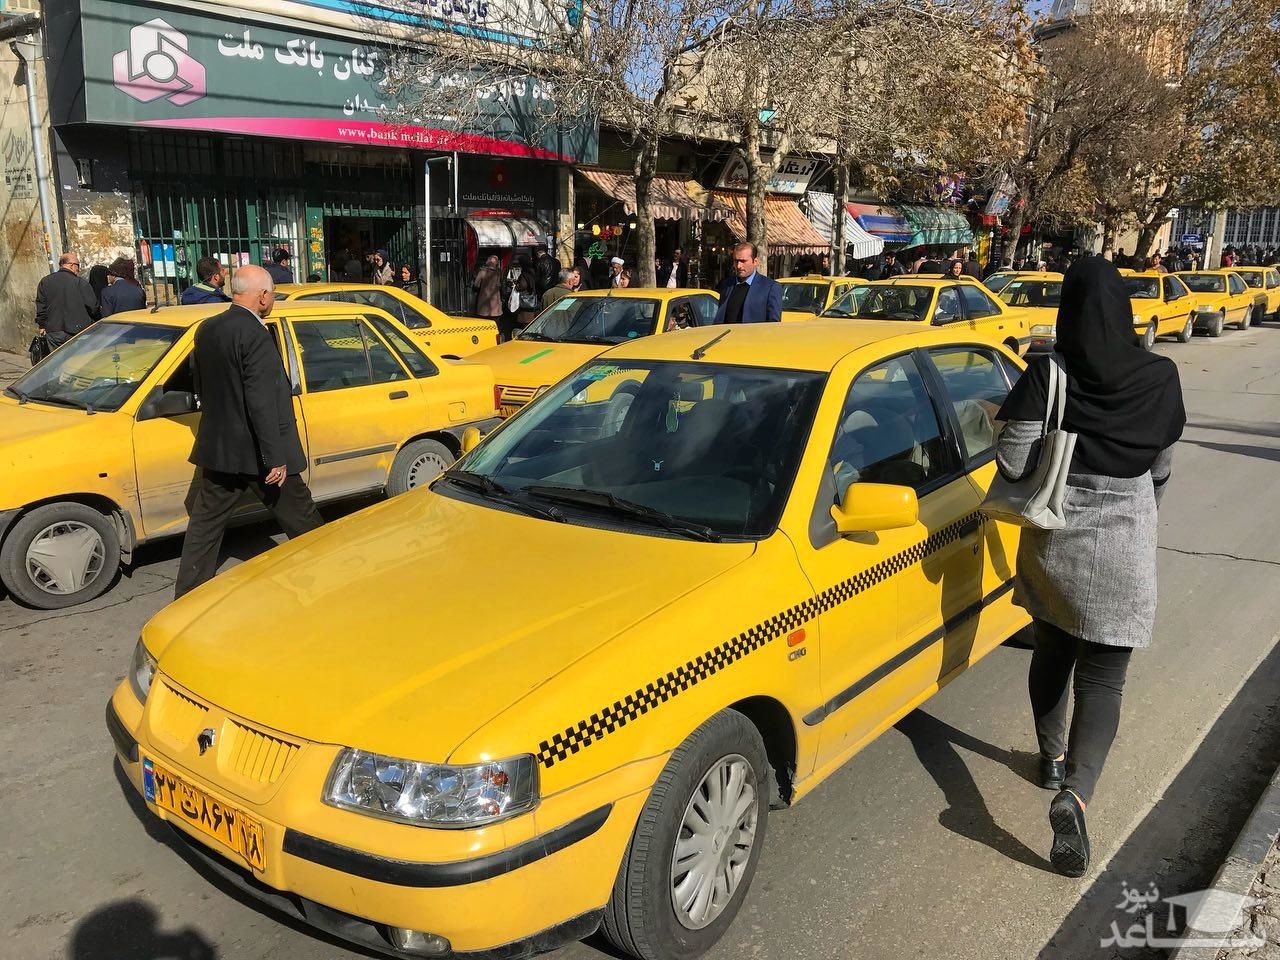 سوار کردن ۴ مسافر در تاکسی غیرقانونی است